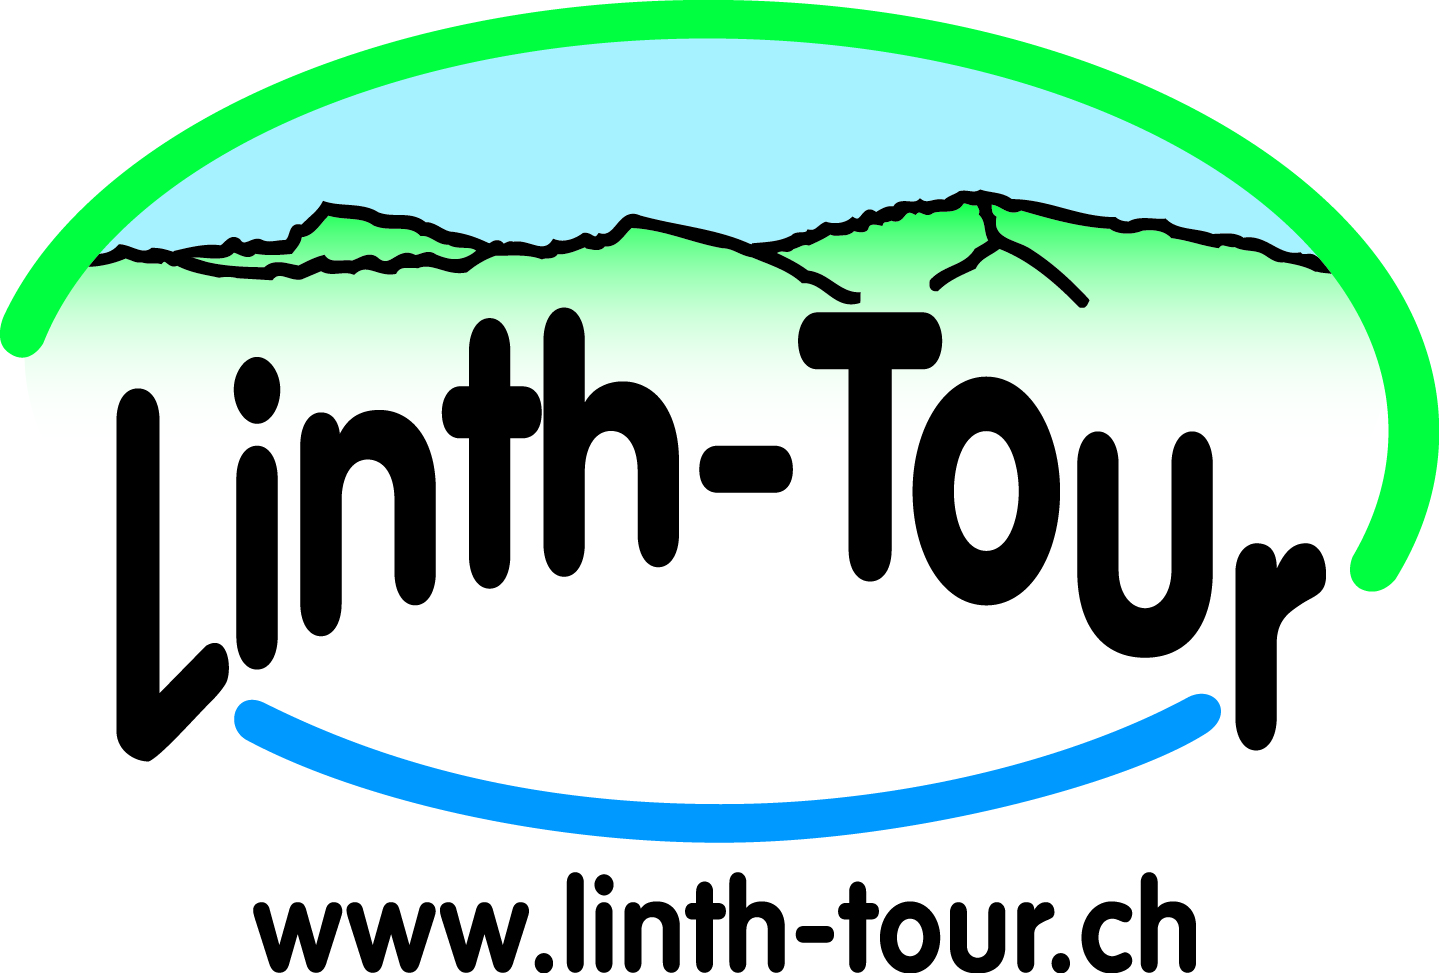 Linth Tour logo 2012